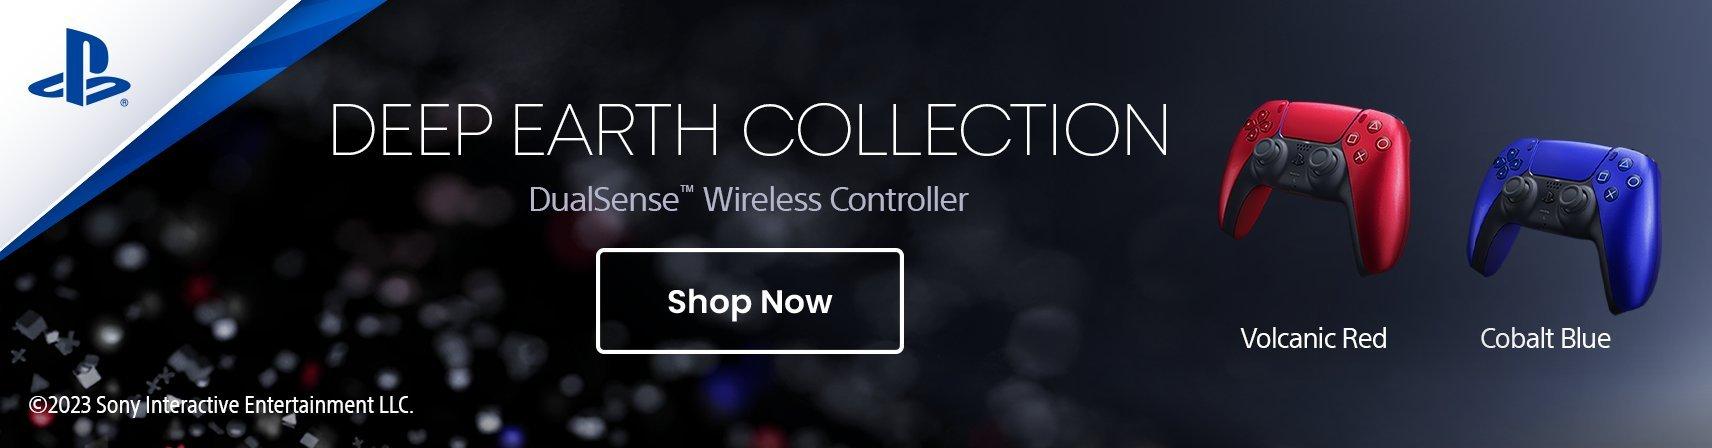 DualSense™ Wireless Controller – Cobalt Blue & Volcanic Red